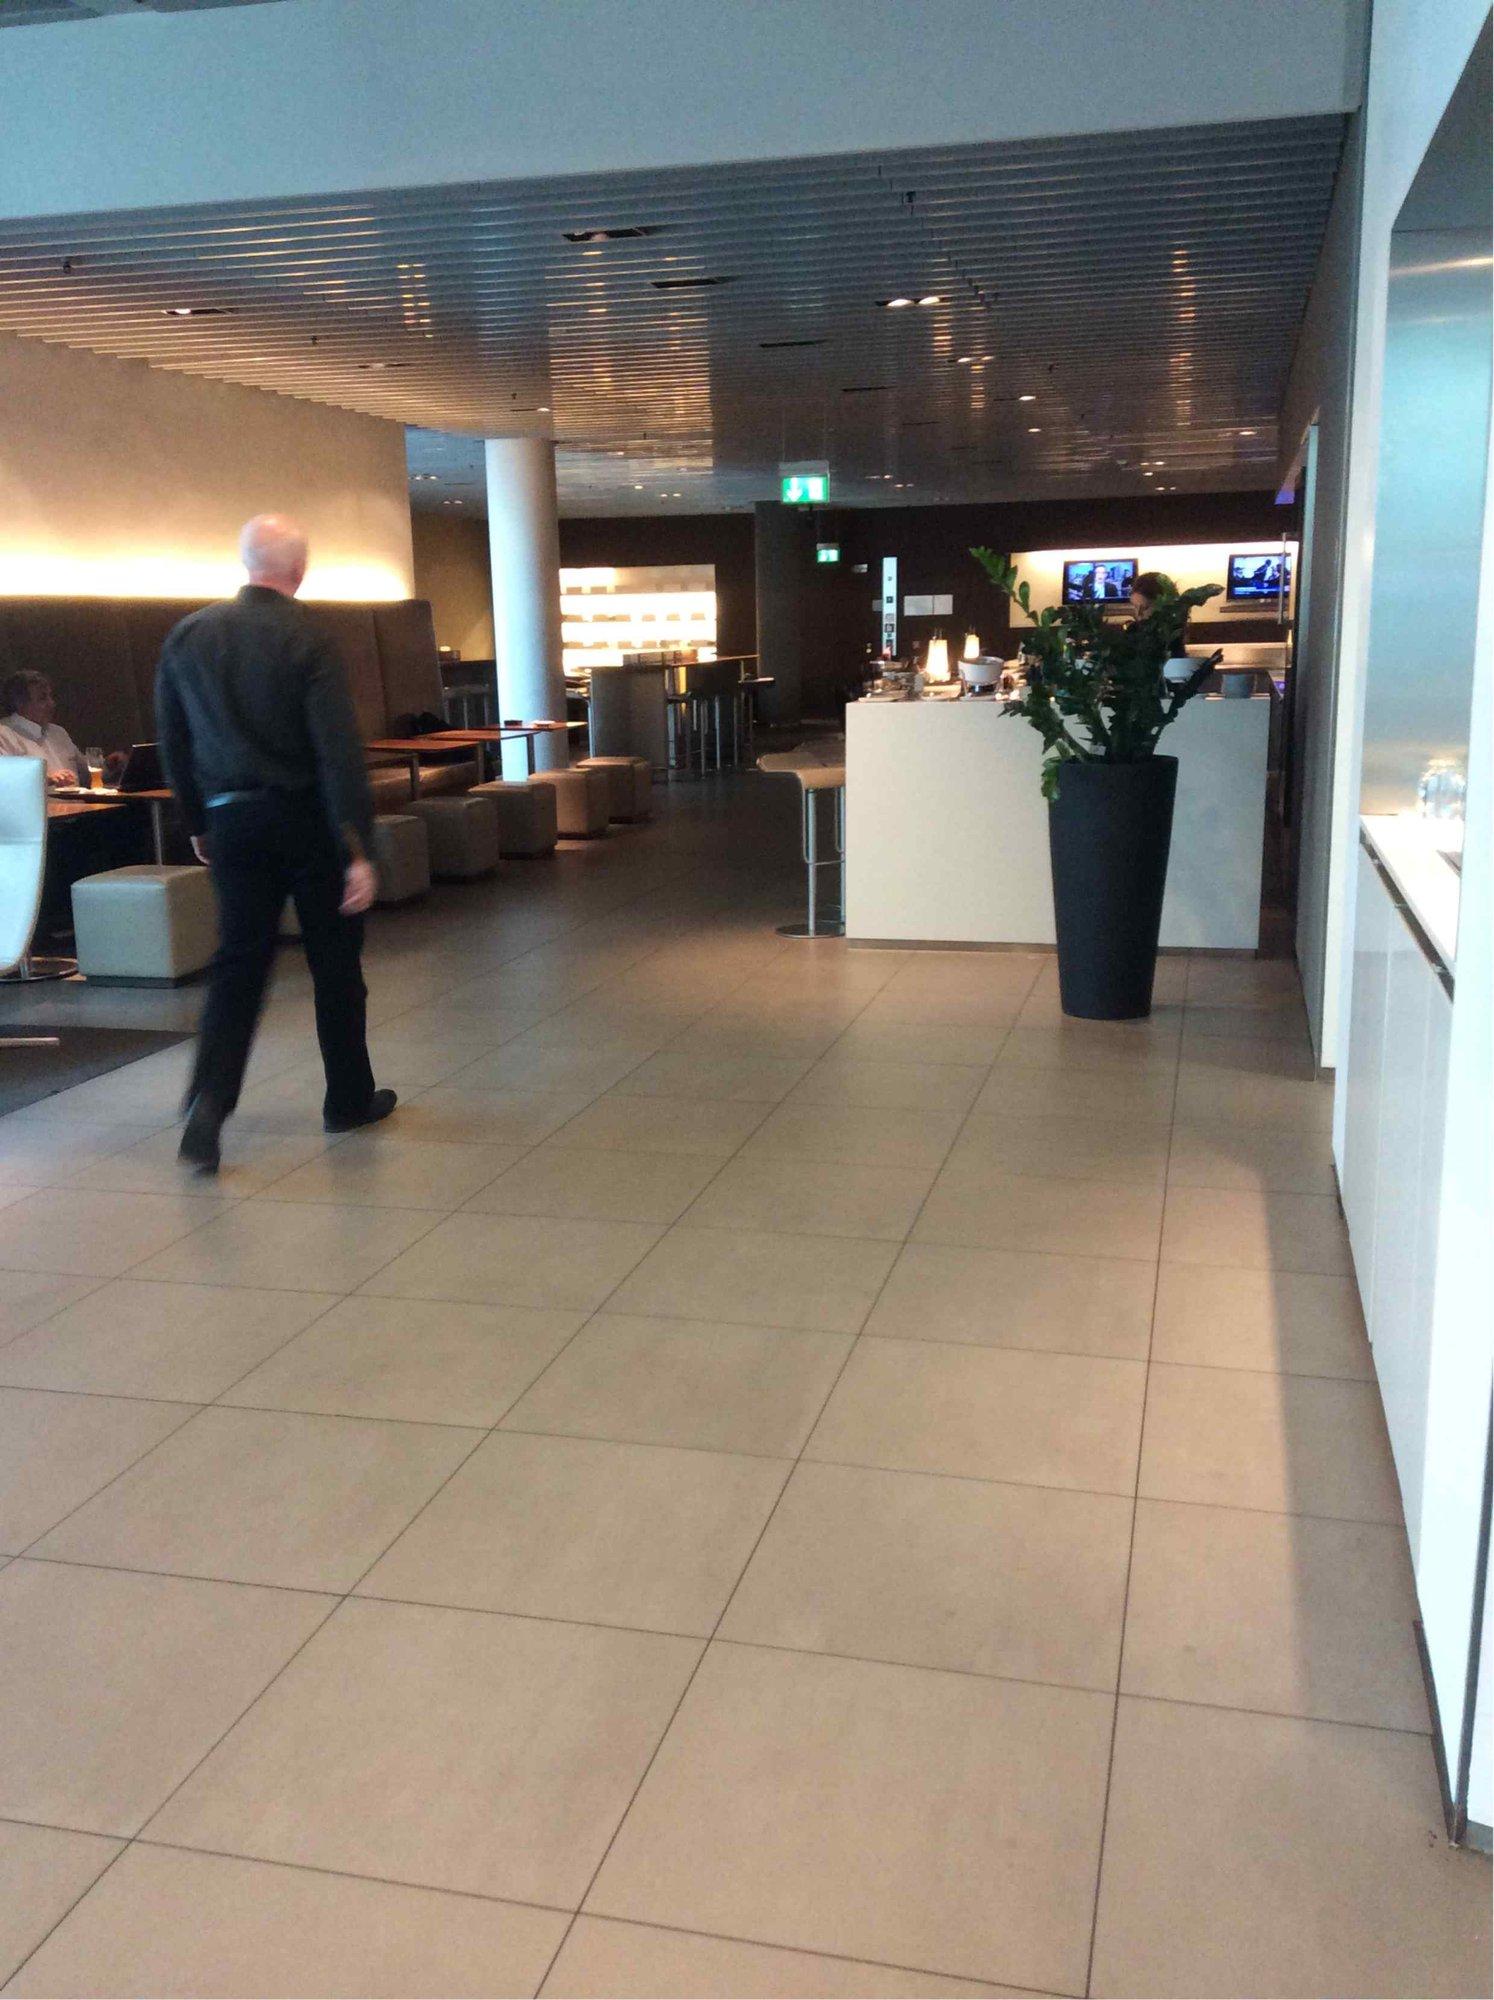 Lufthansa Senator Lounge (Non-Schengen) image 5 of 14